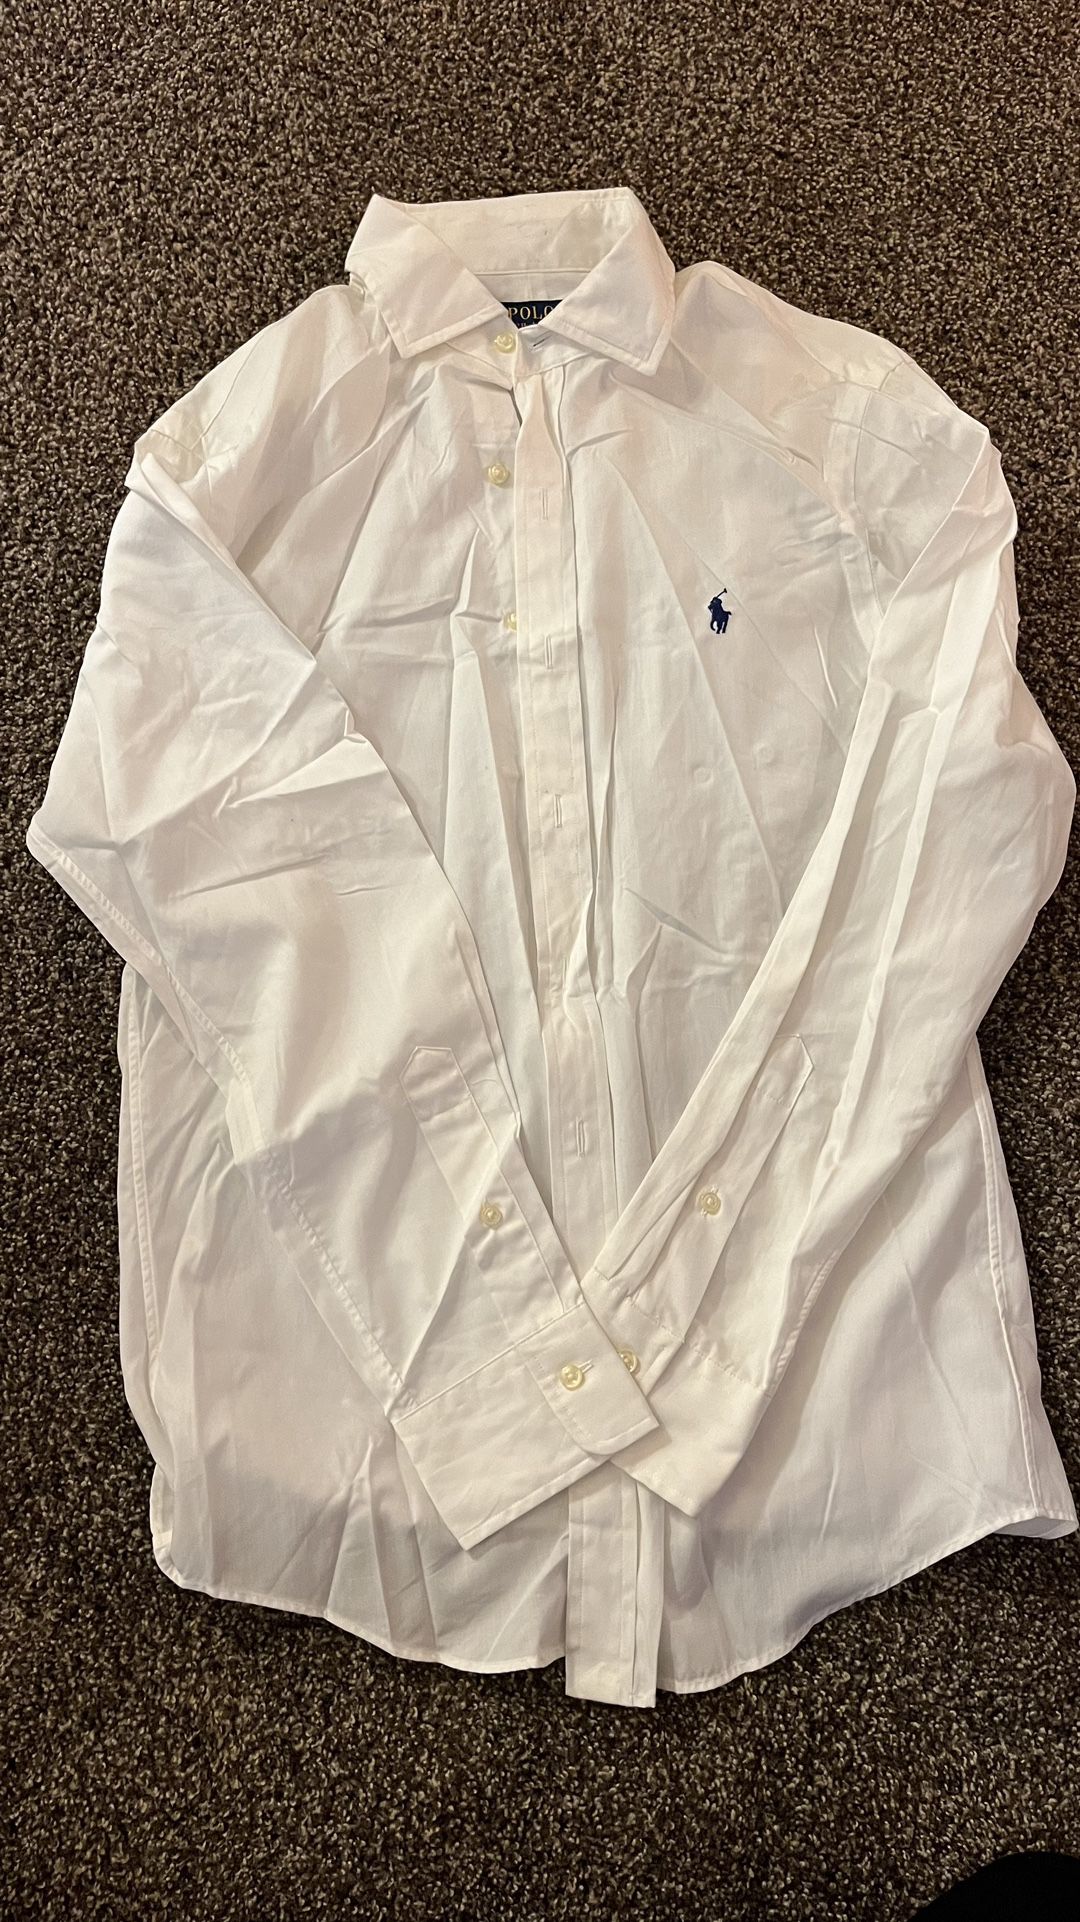 Ralph Lauren Men’s Medium Oxford Dress Shirt